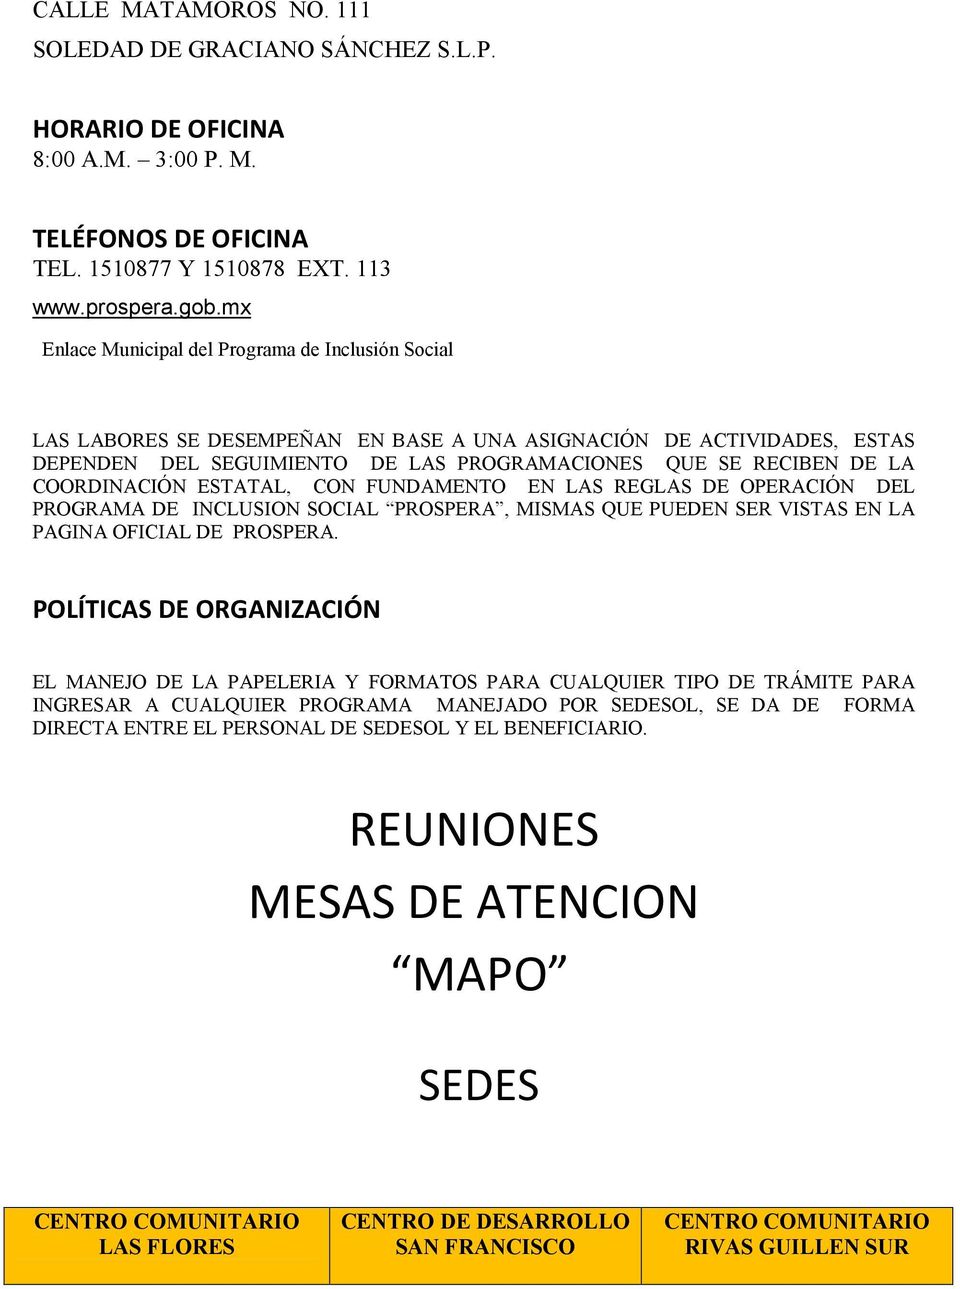 OPERACIÓN DEL PROGRAMA DE INCLUSION SOCIAL PROSPERA, MISMAS QUE PUEDEN SER VISTAS EN LA PAGINA OFICIAL DE PROSPERA.